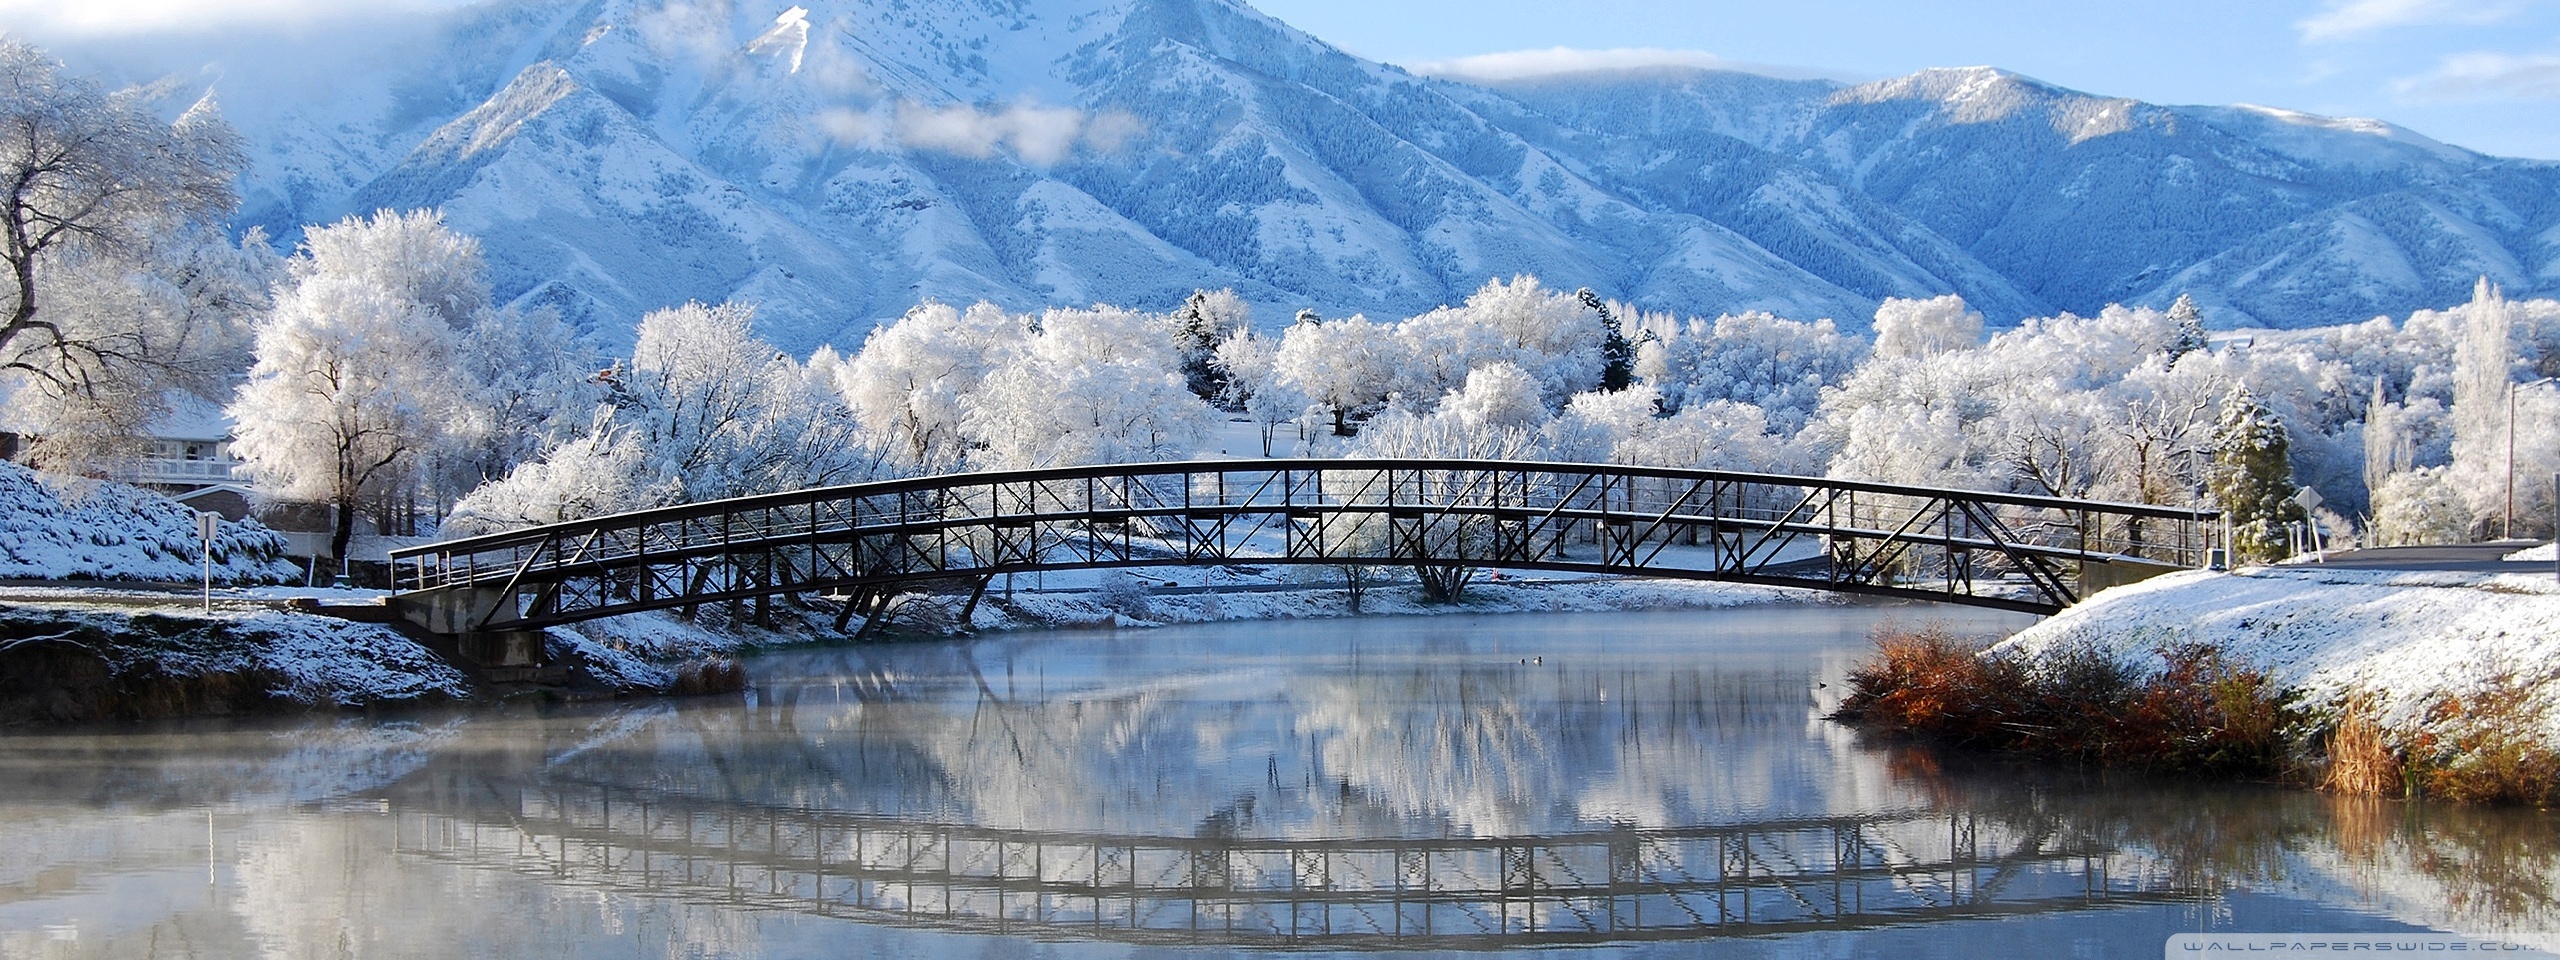 Winter bridge photo